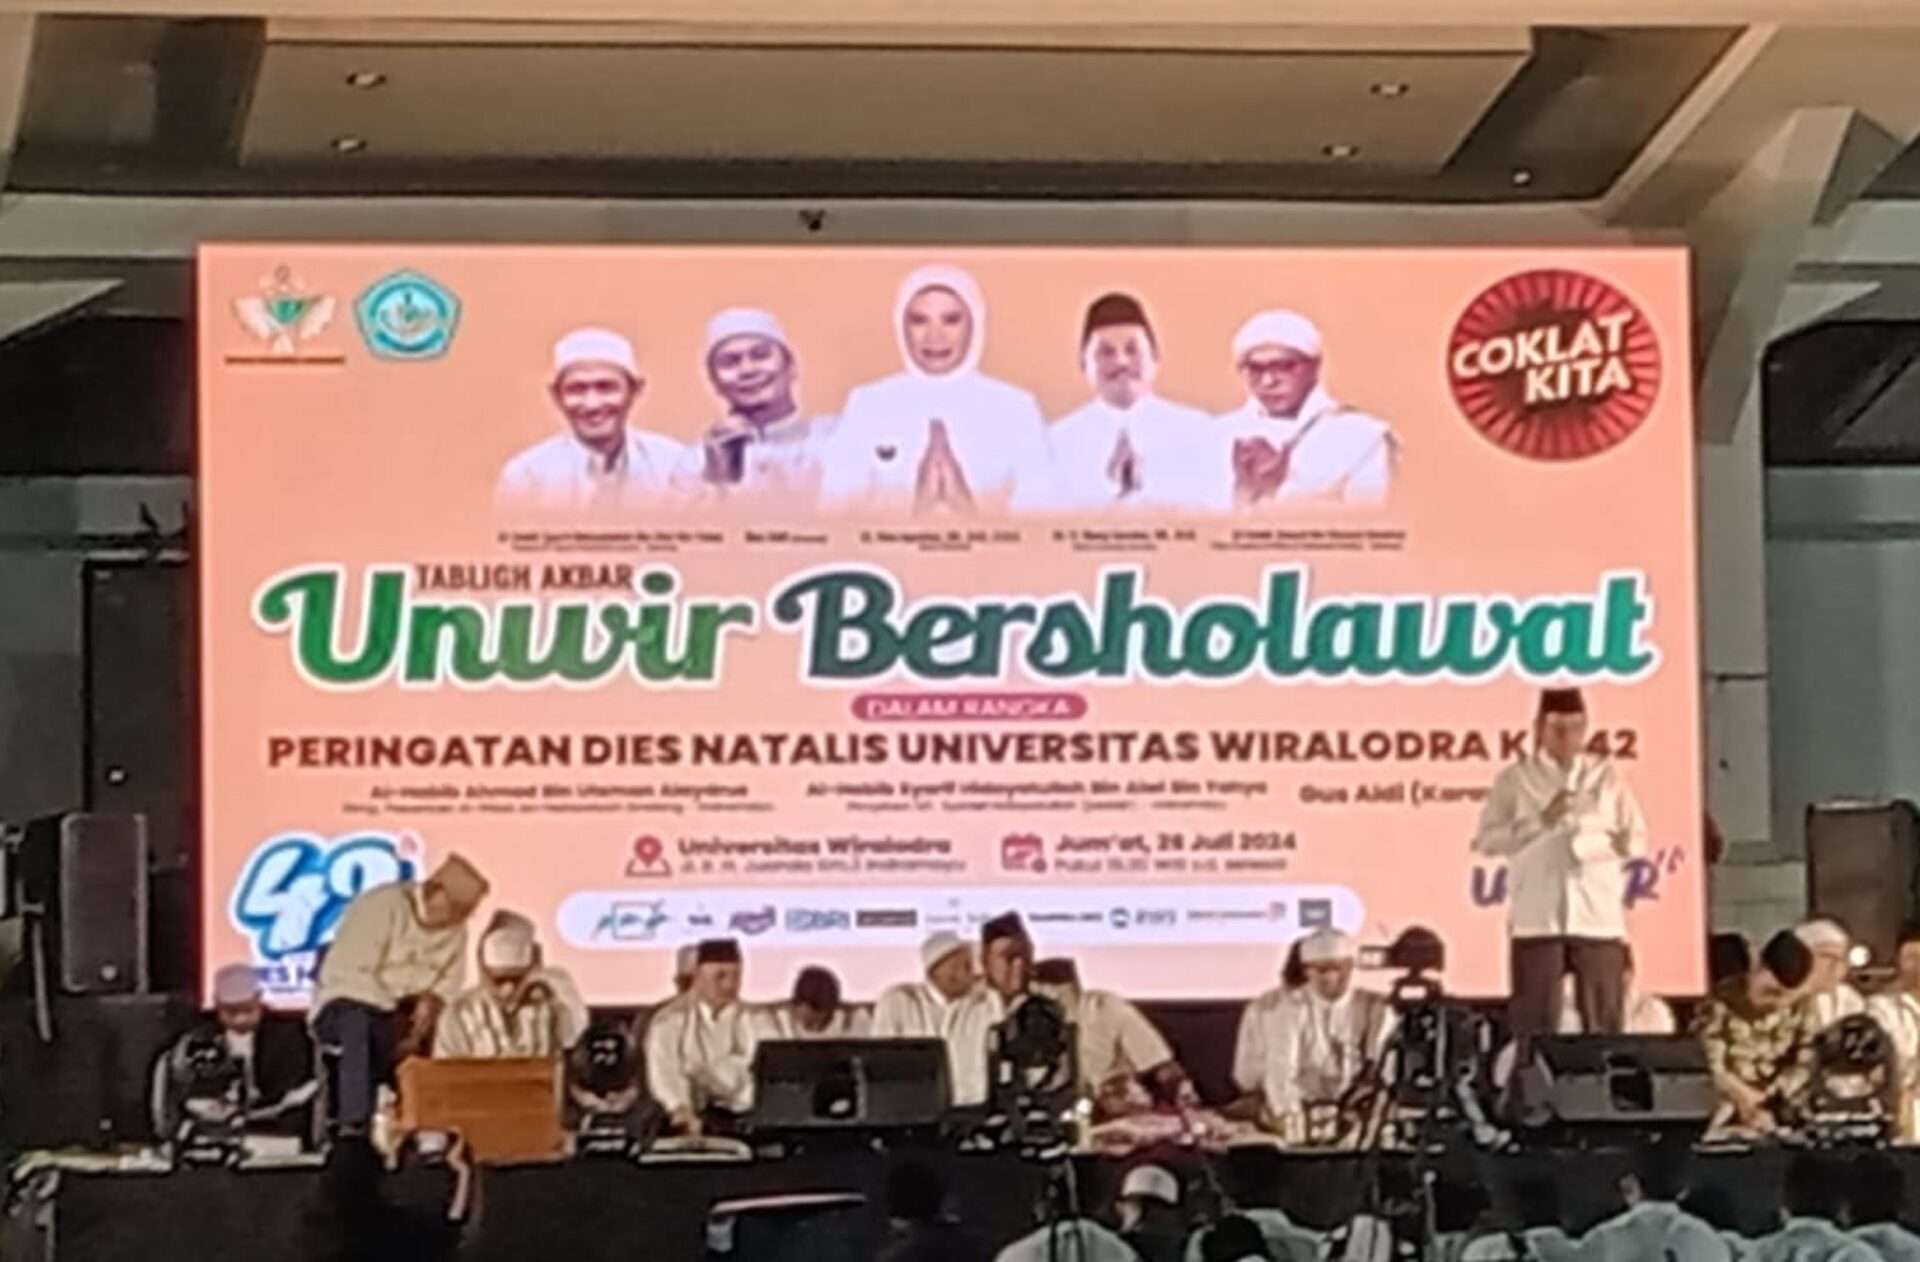 Dies Natalis ke-42 Universitas Wiralodra: UNWIR Bersholawat untuk Membangun Kebersamaan dan Spiritualitas